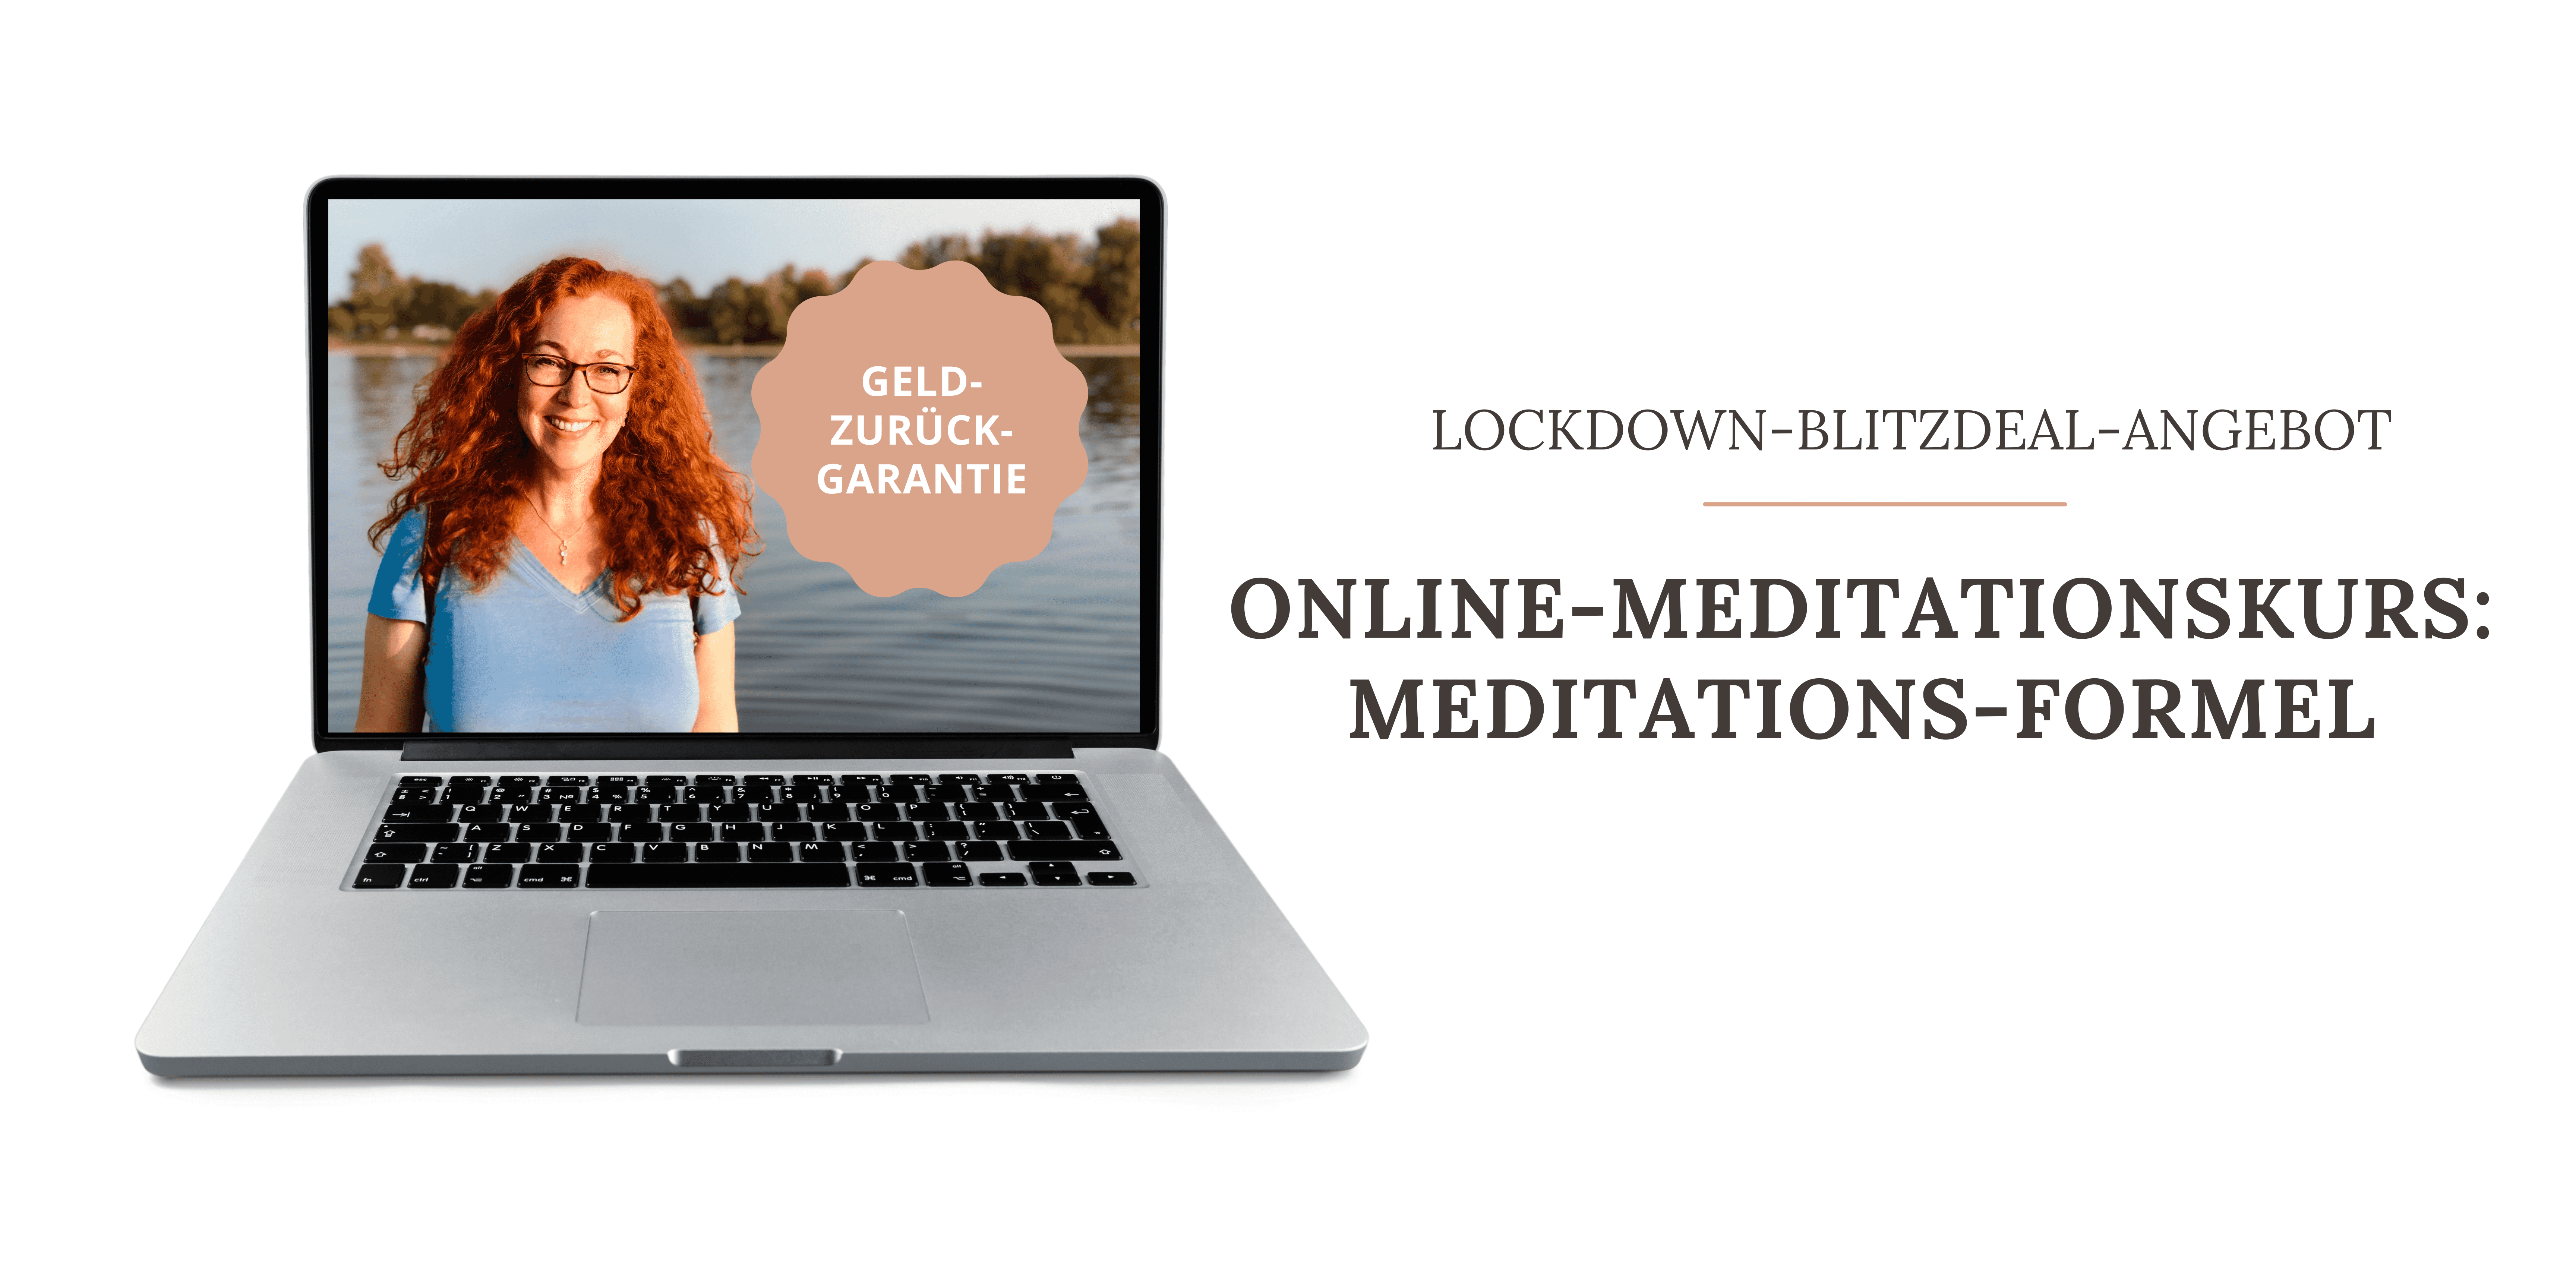 Online-Meditationskurs-Meditations-Formel-1